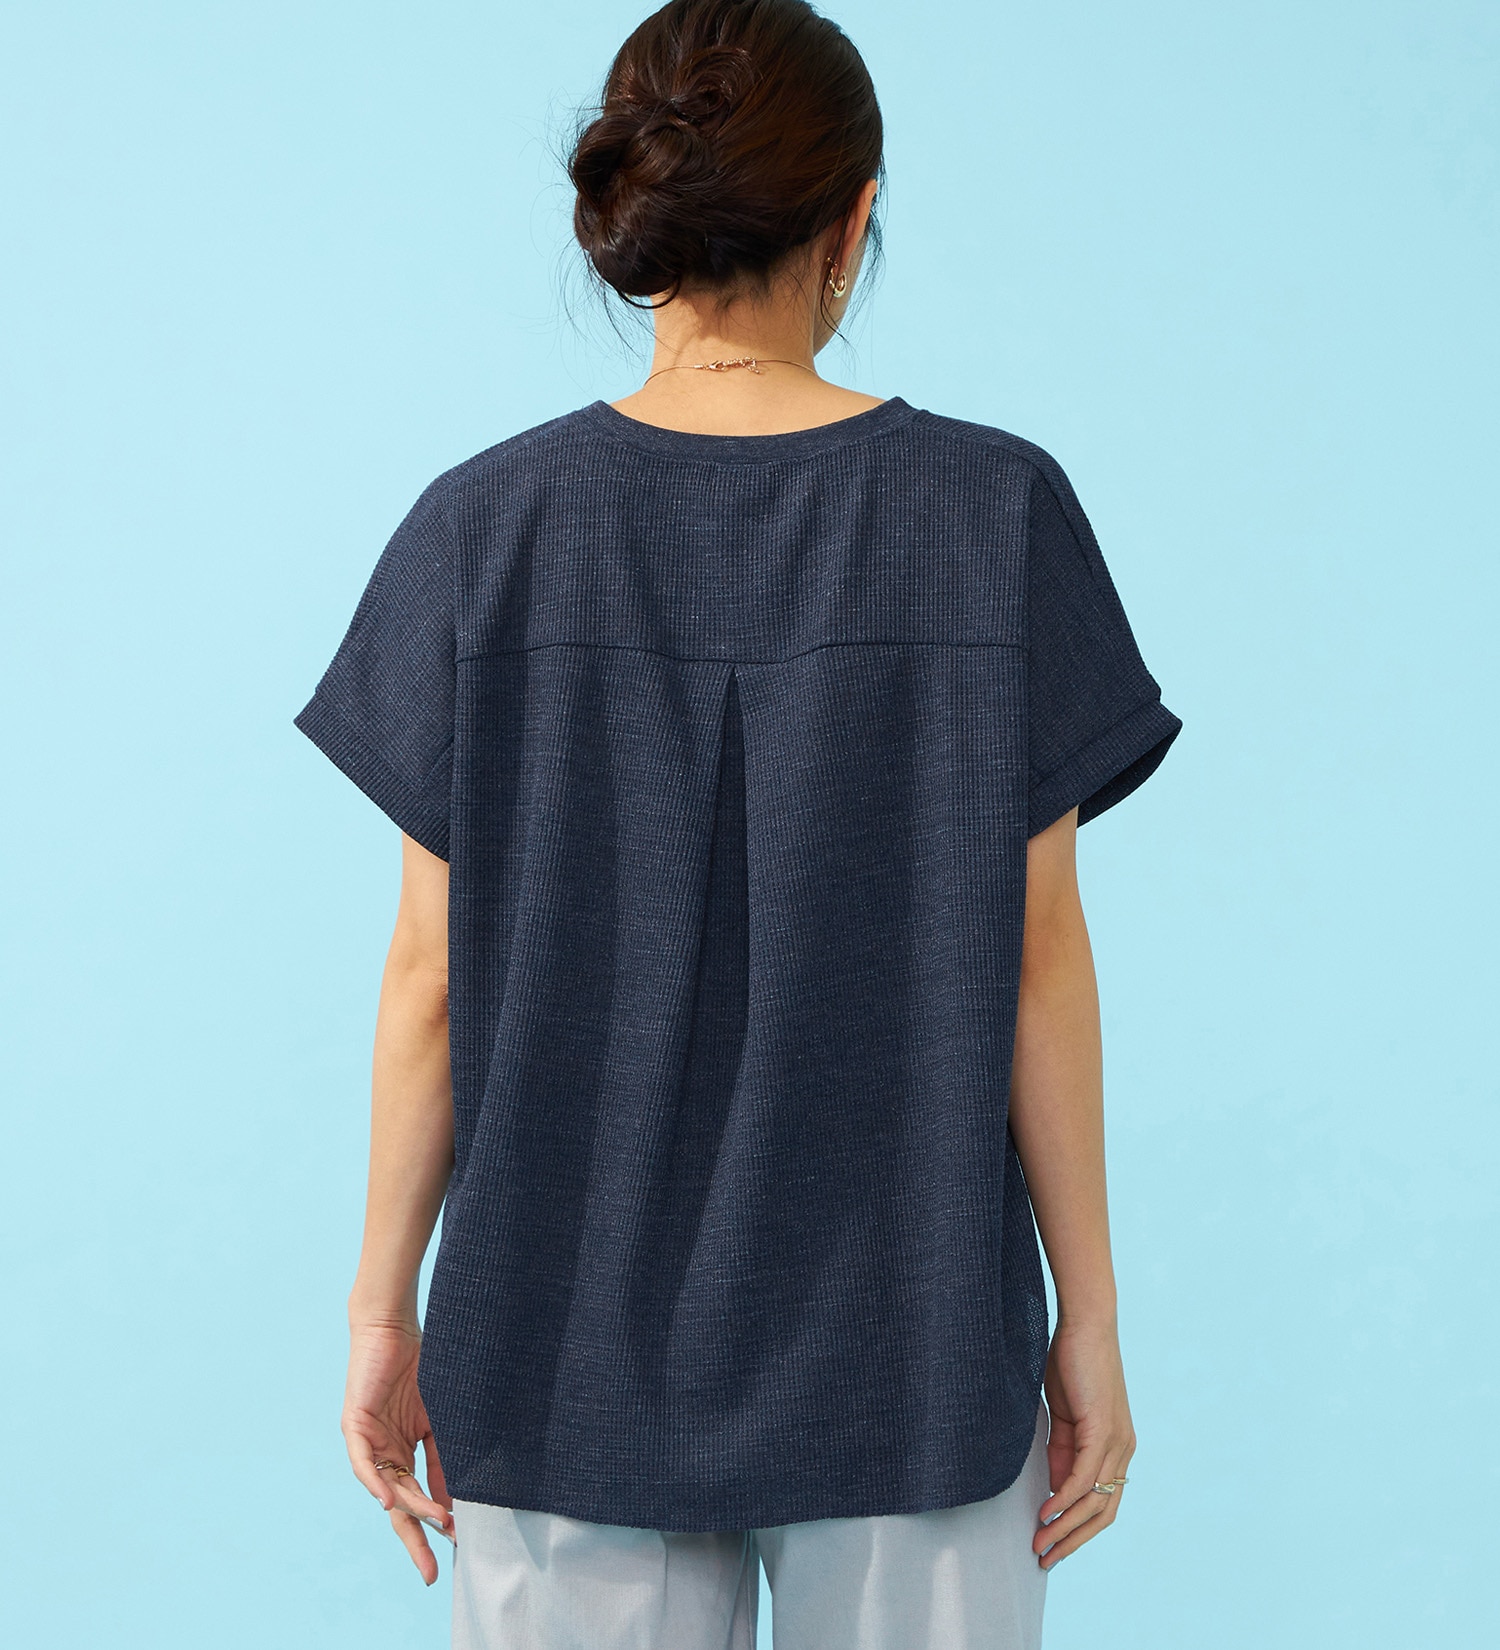 SOMETHING(サムシング)のSOMETHING COOL バックタック半袖Tシャツ【涼】|トップス/Tシャツ/カットソー/レディース|ダークブルー